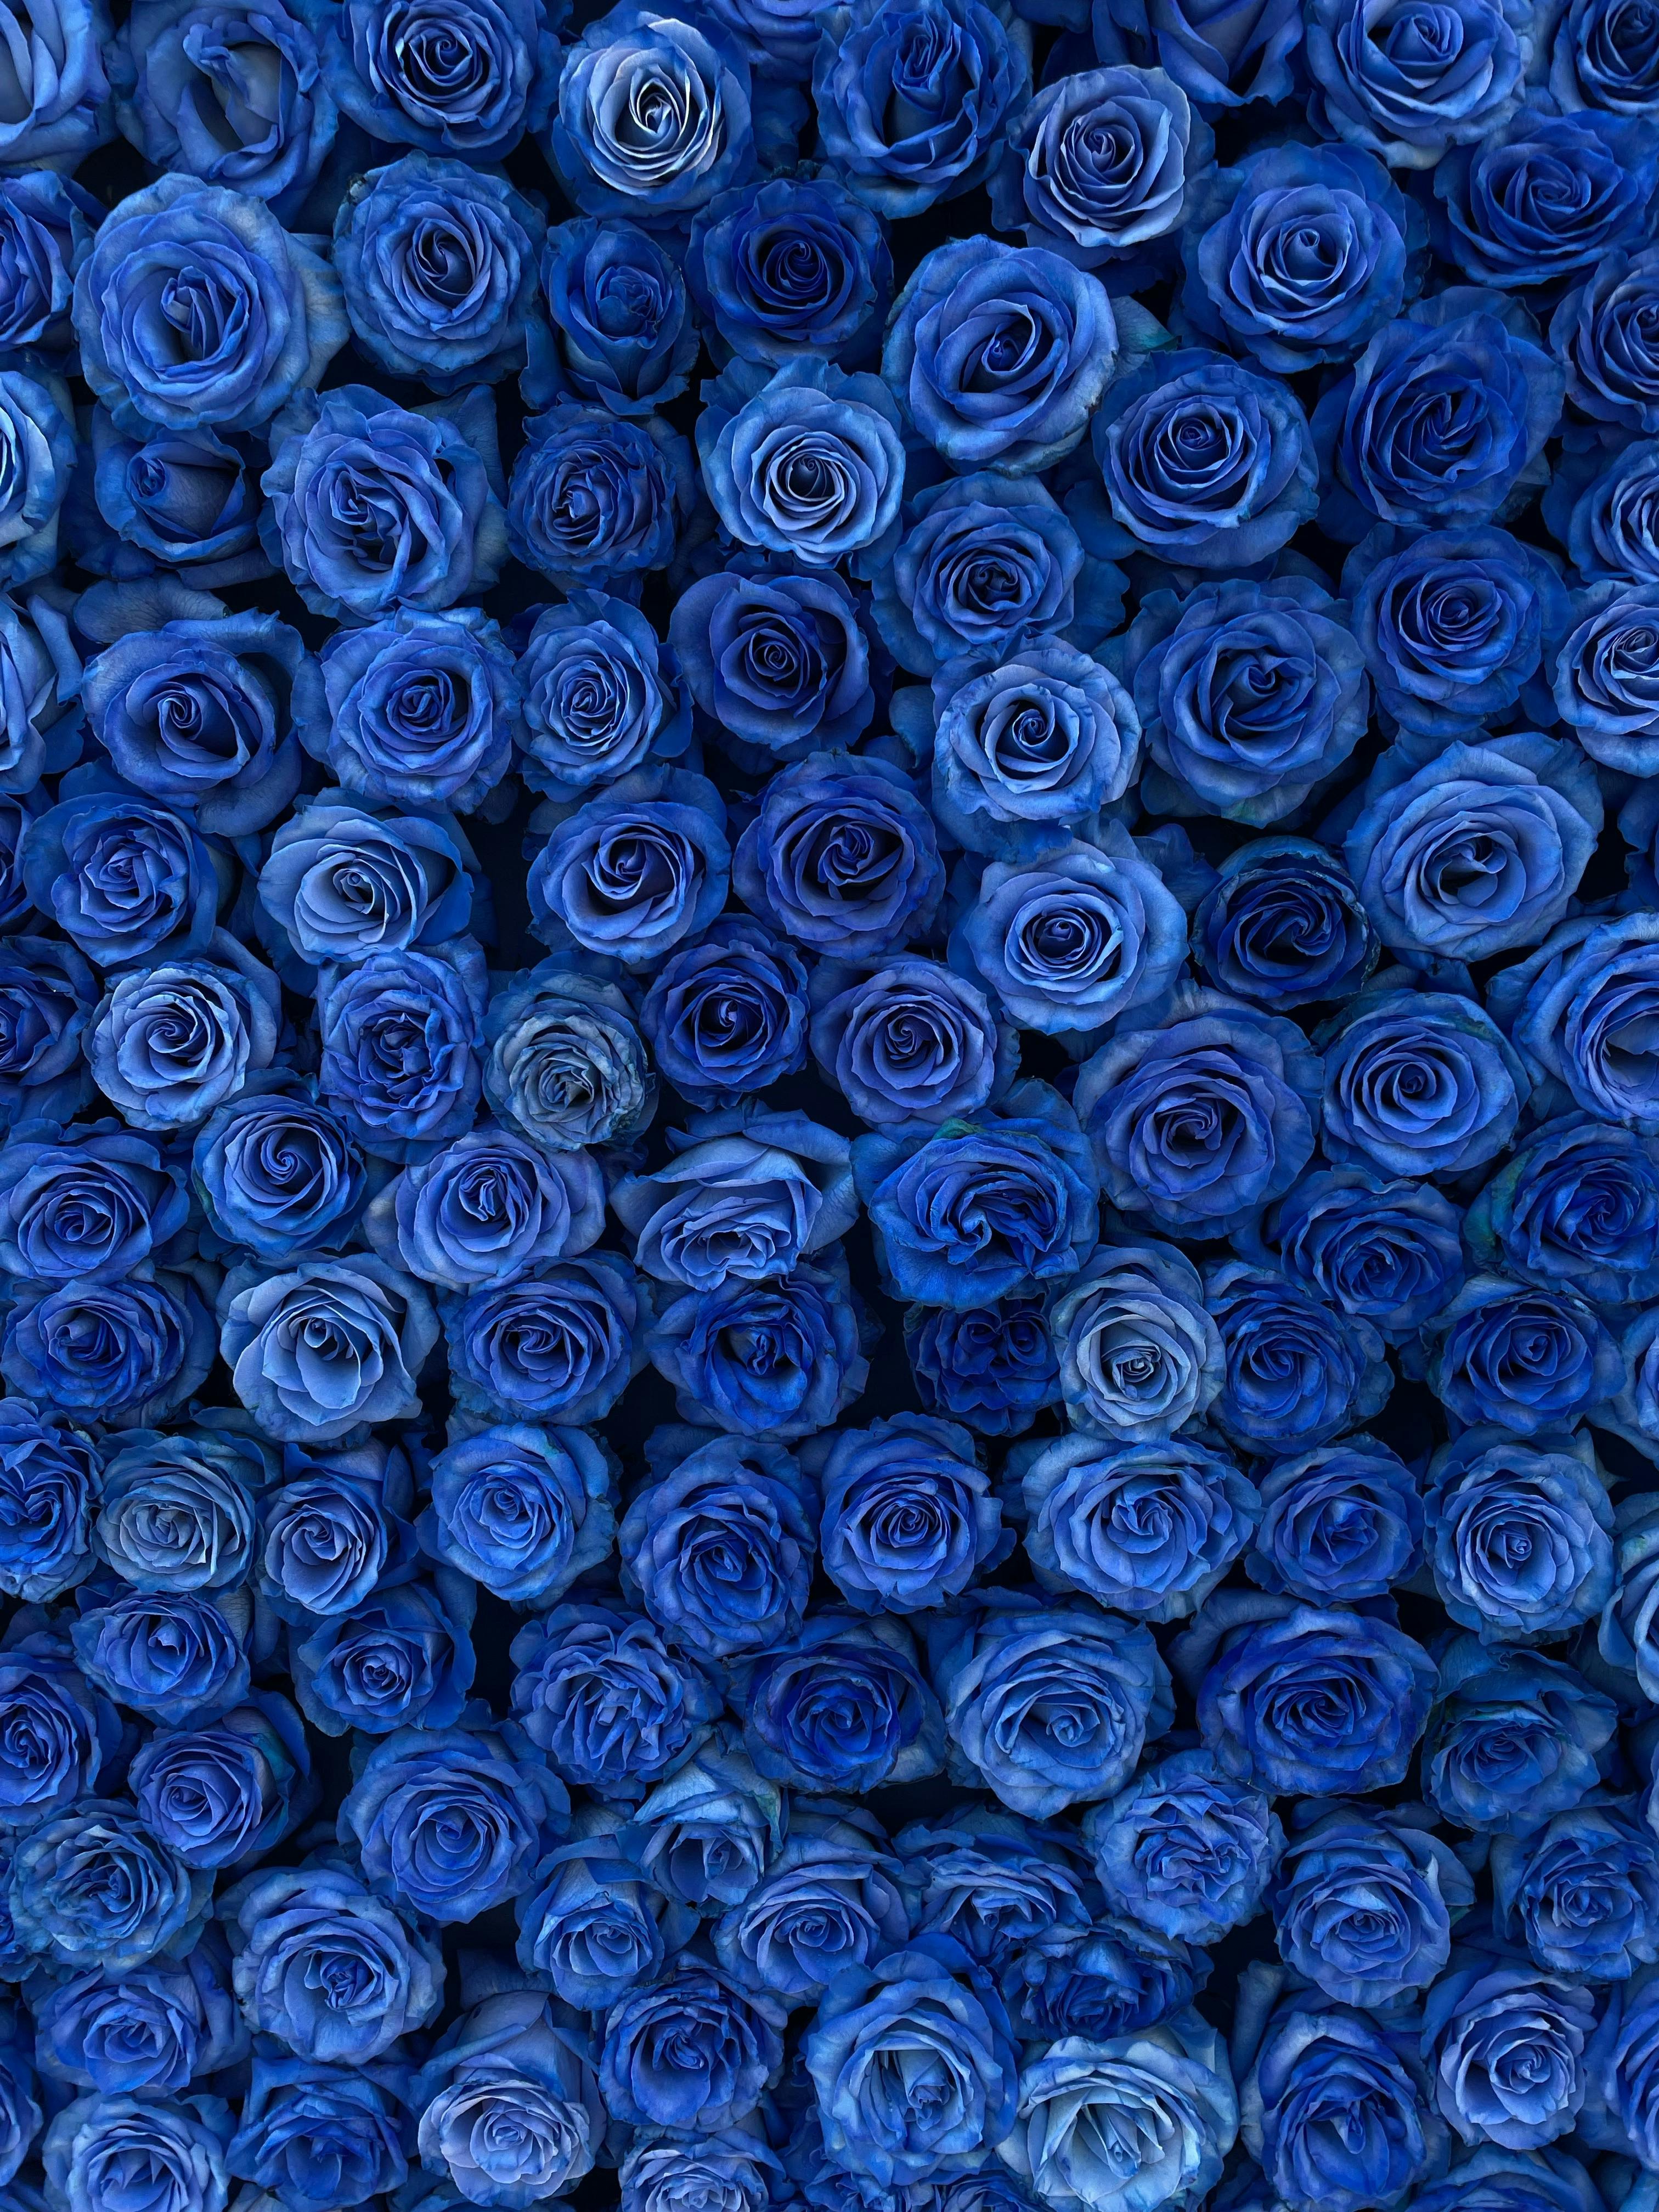 Tổng hợp 100 hình ảnh hình nền hoa hồng đẹp nhất